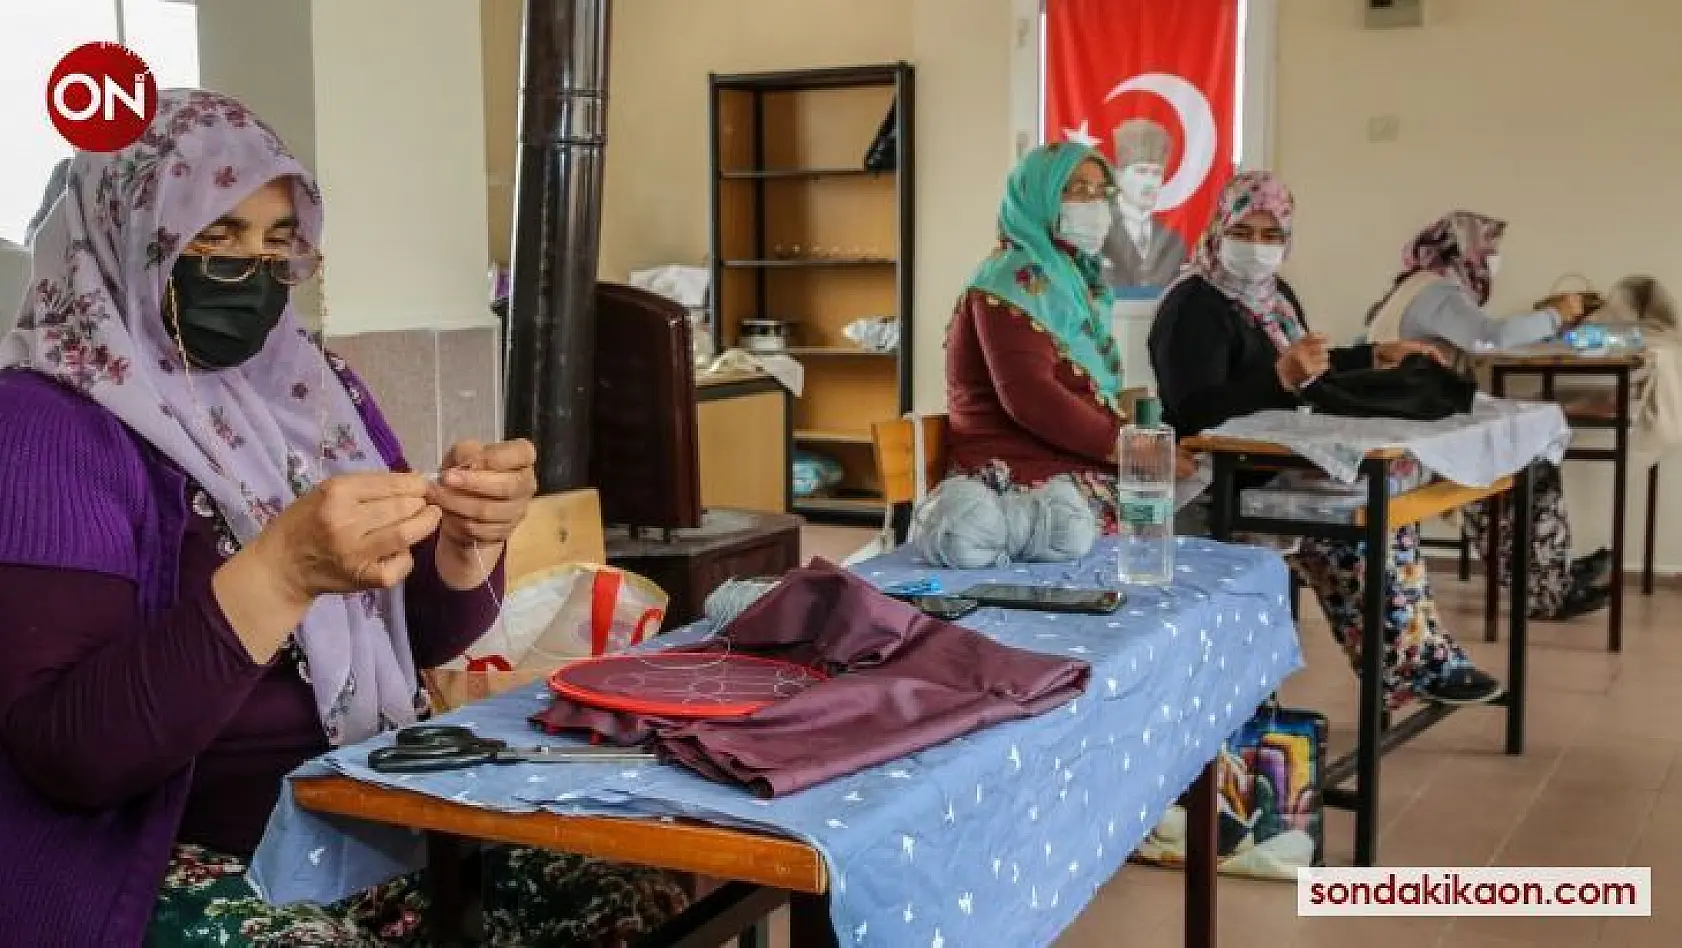 Kırklar'da yaşayan kadınlara kurs müjdesi